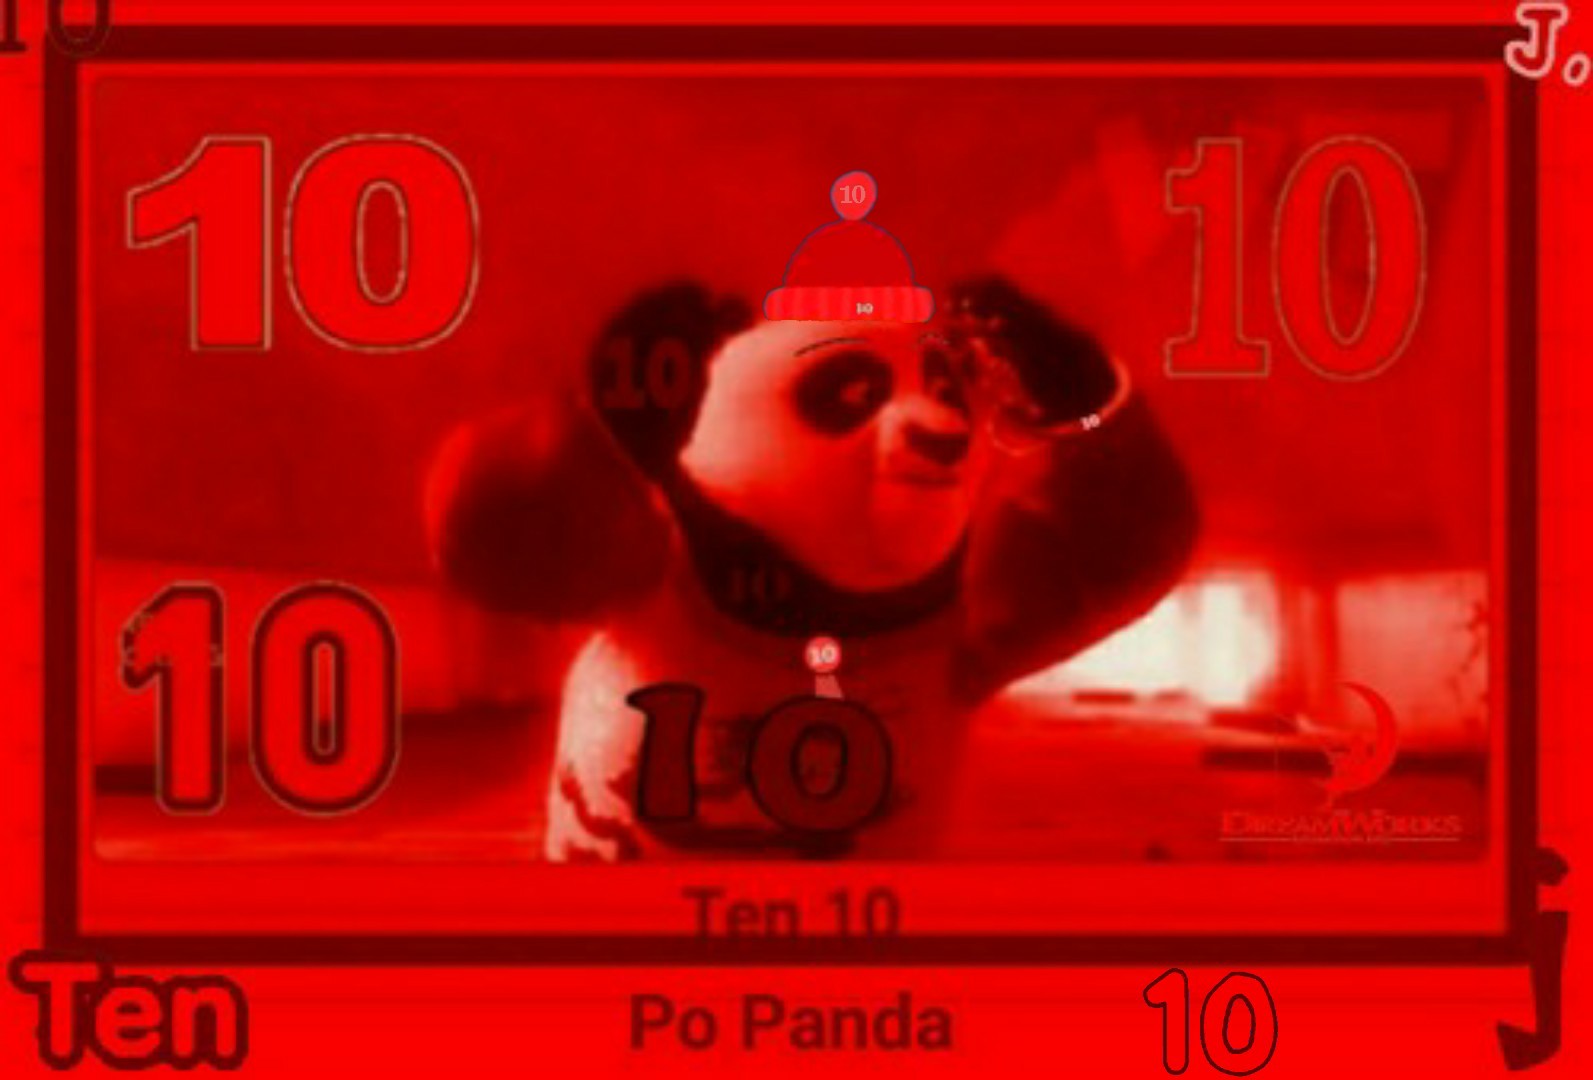 Po Panda